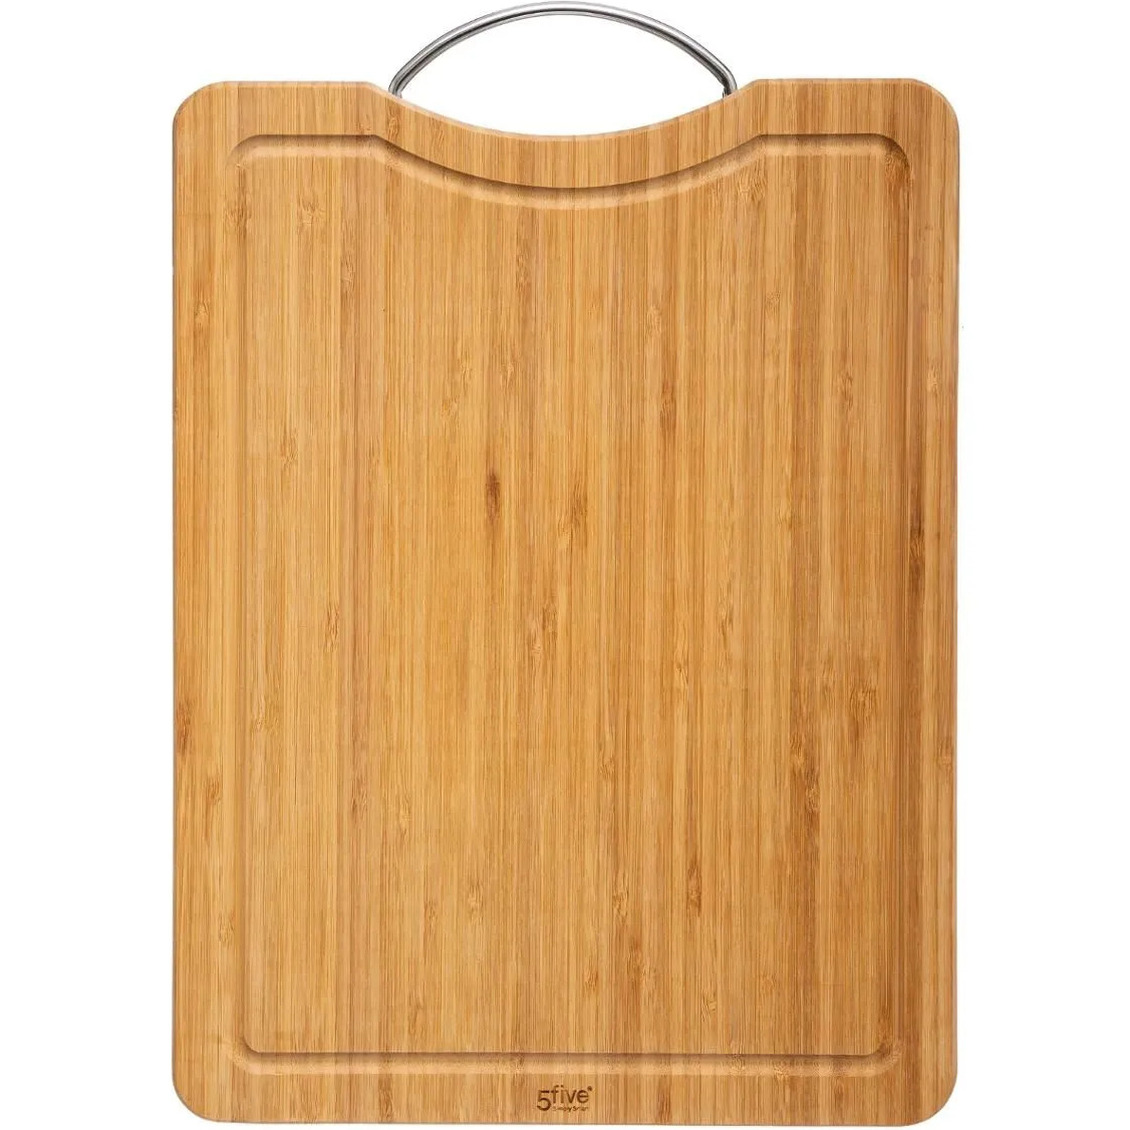 Secret de Gourmet Snijplank met metalen handvat 30 x 20 cm van bamboe hout -